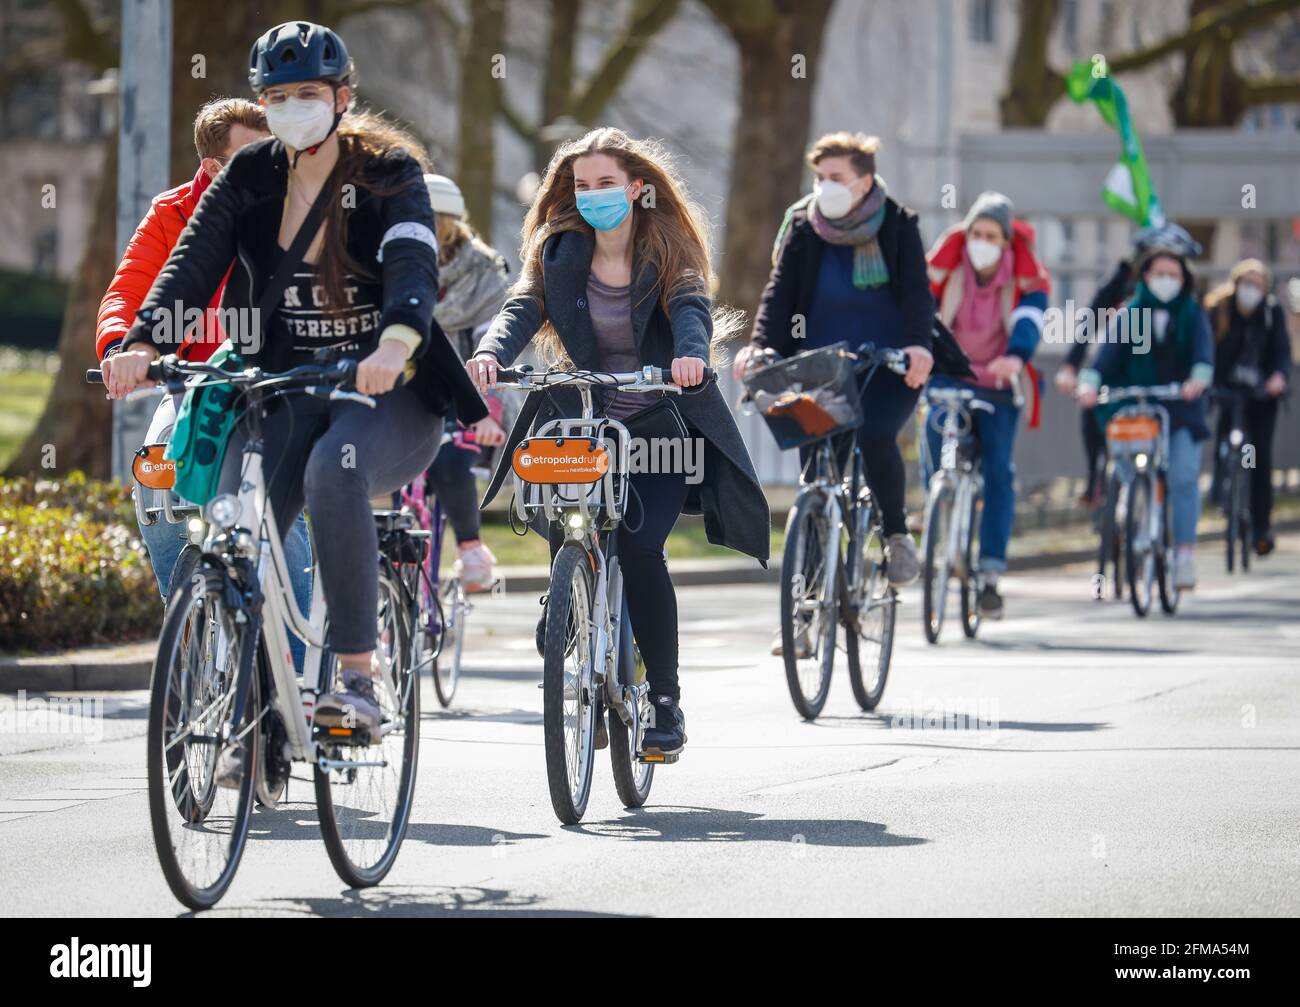 Essen, Nordrhein-Westfalen, Deutschland - Freitags für die Zukunft demonstrieren Klimaaktivisten in Zeiten der Corona-Pandemie koronakonform mit Maske und Distanz unter dem Motto #NoMehrPromises in Form einer Fahrrad-Demo. Stockfoto